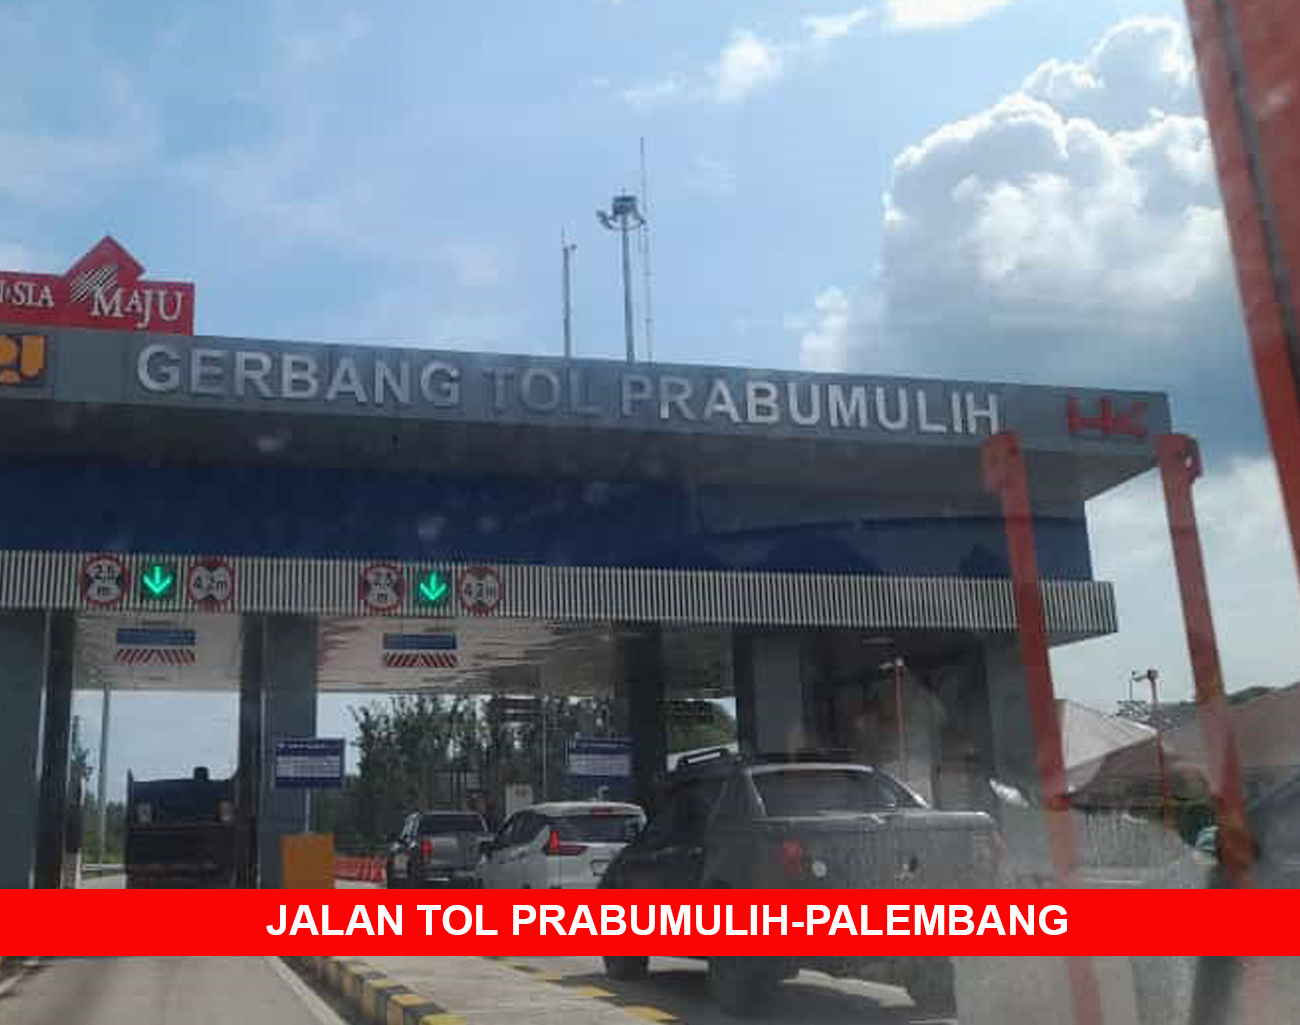 Inilah Perkembangan Jalan Tol Prabumulih-Indralaya-Palembang, Liburan ke Palembang